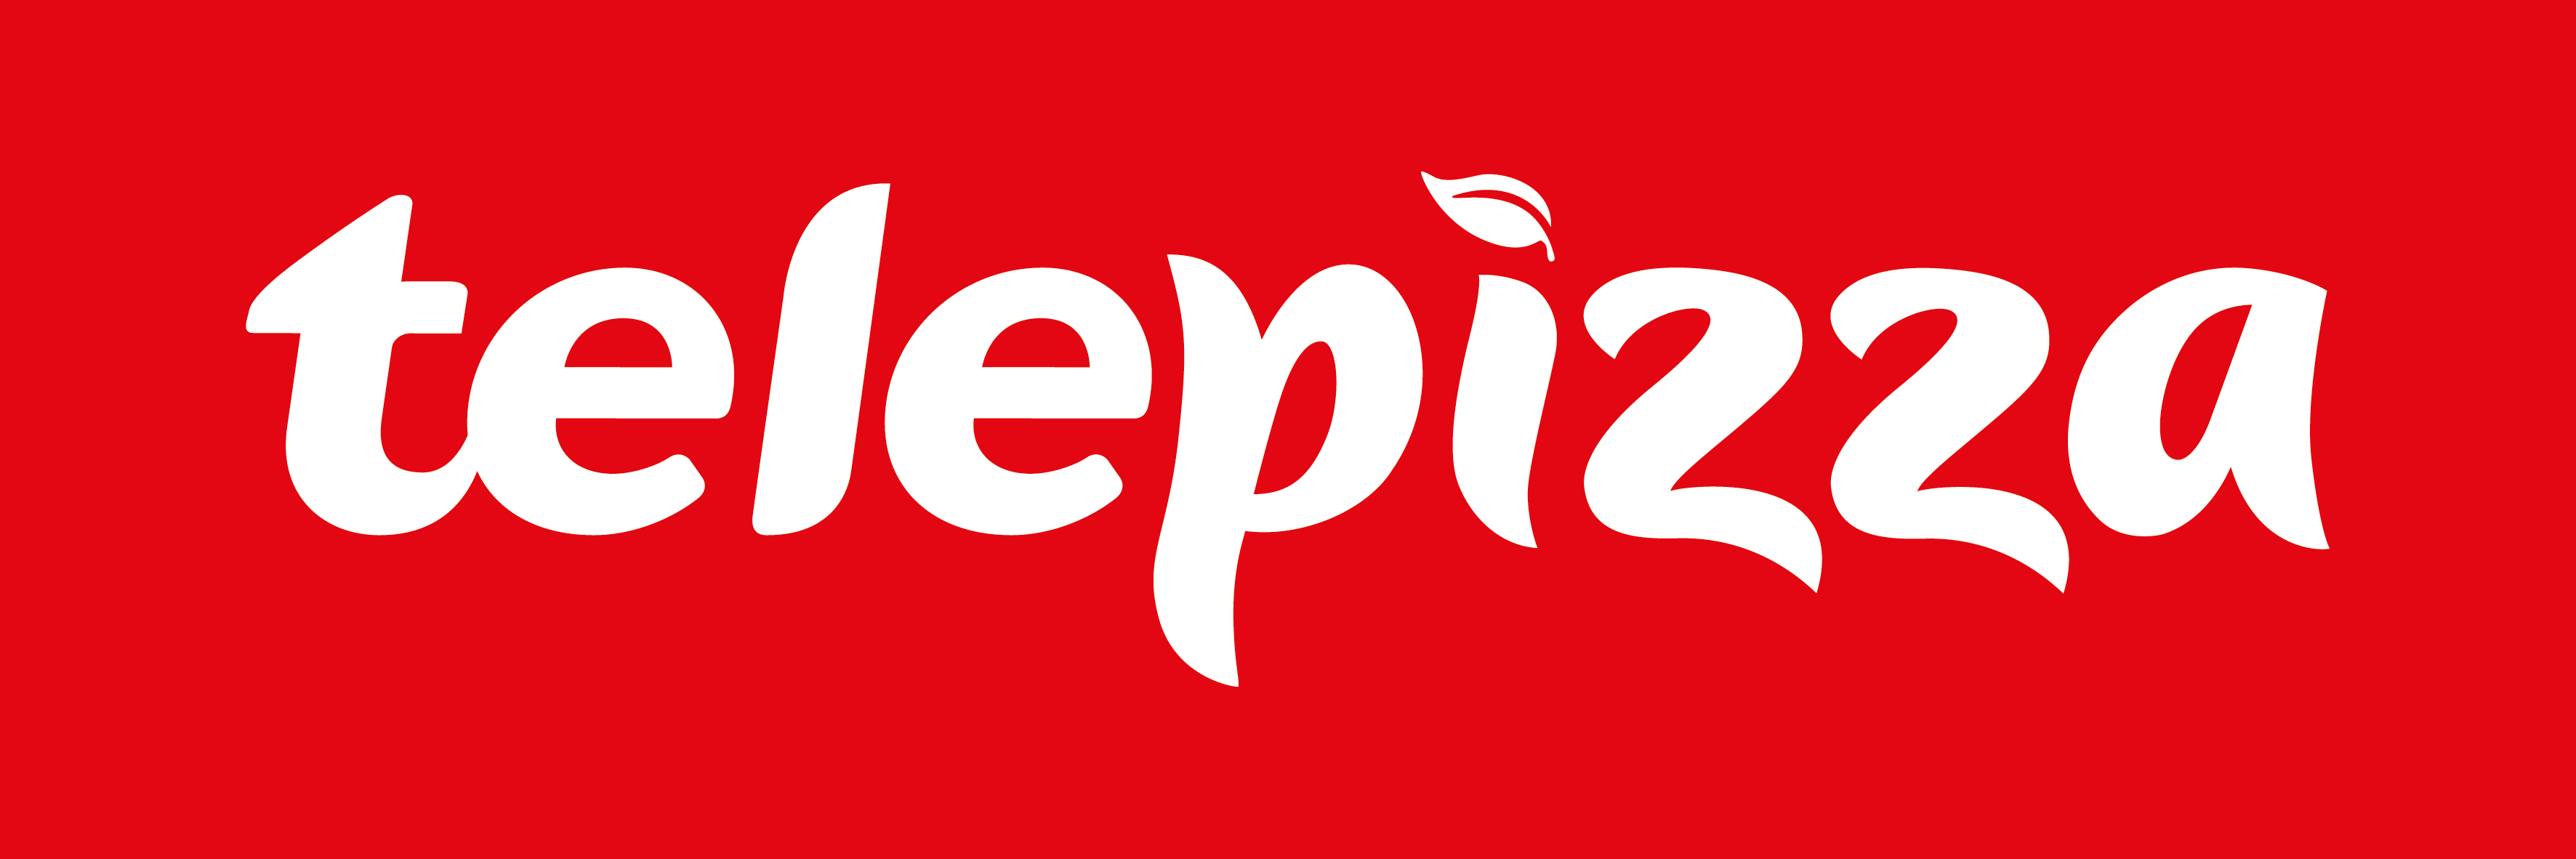 Logo Telepizza Blanco sobre fondo rojo.png